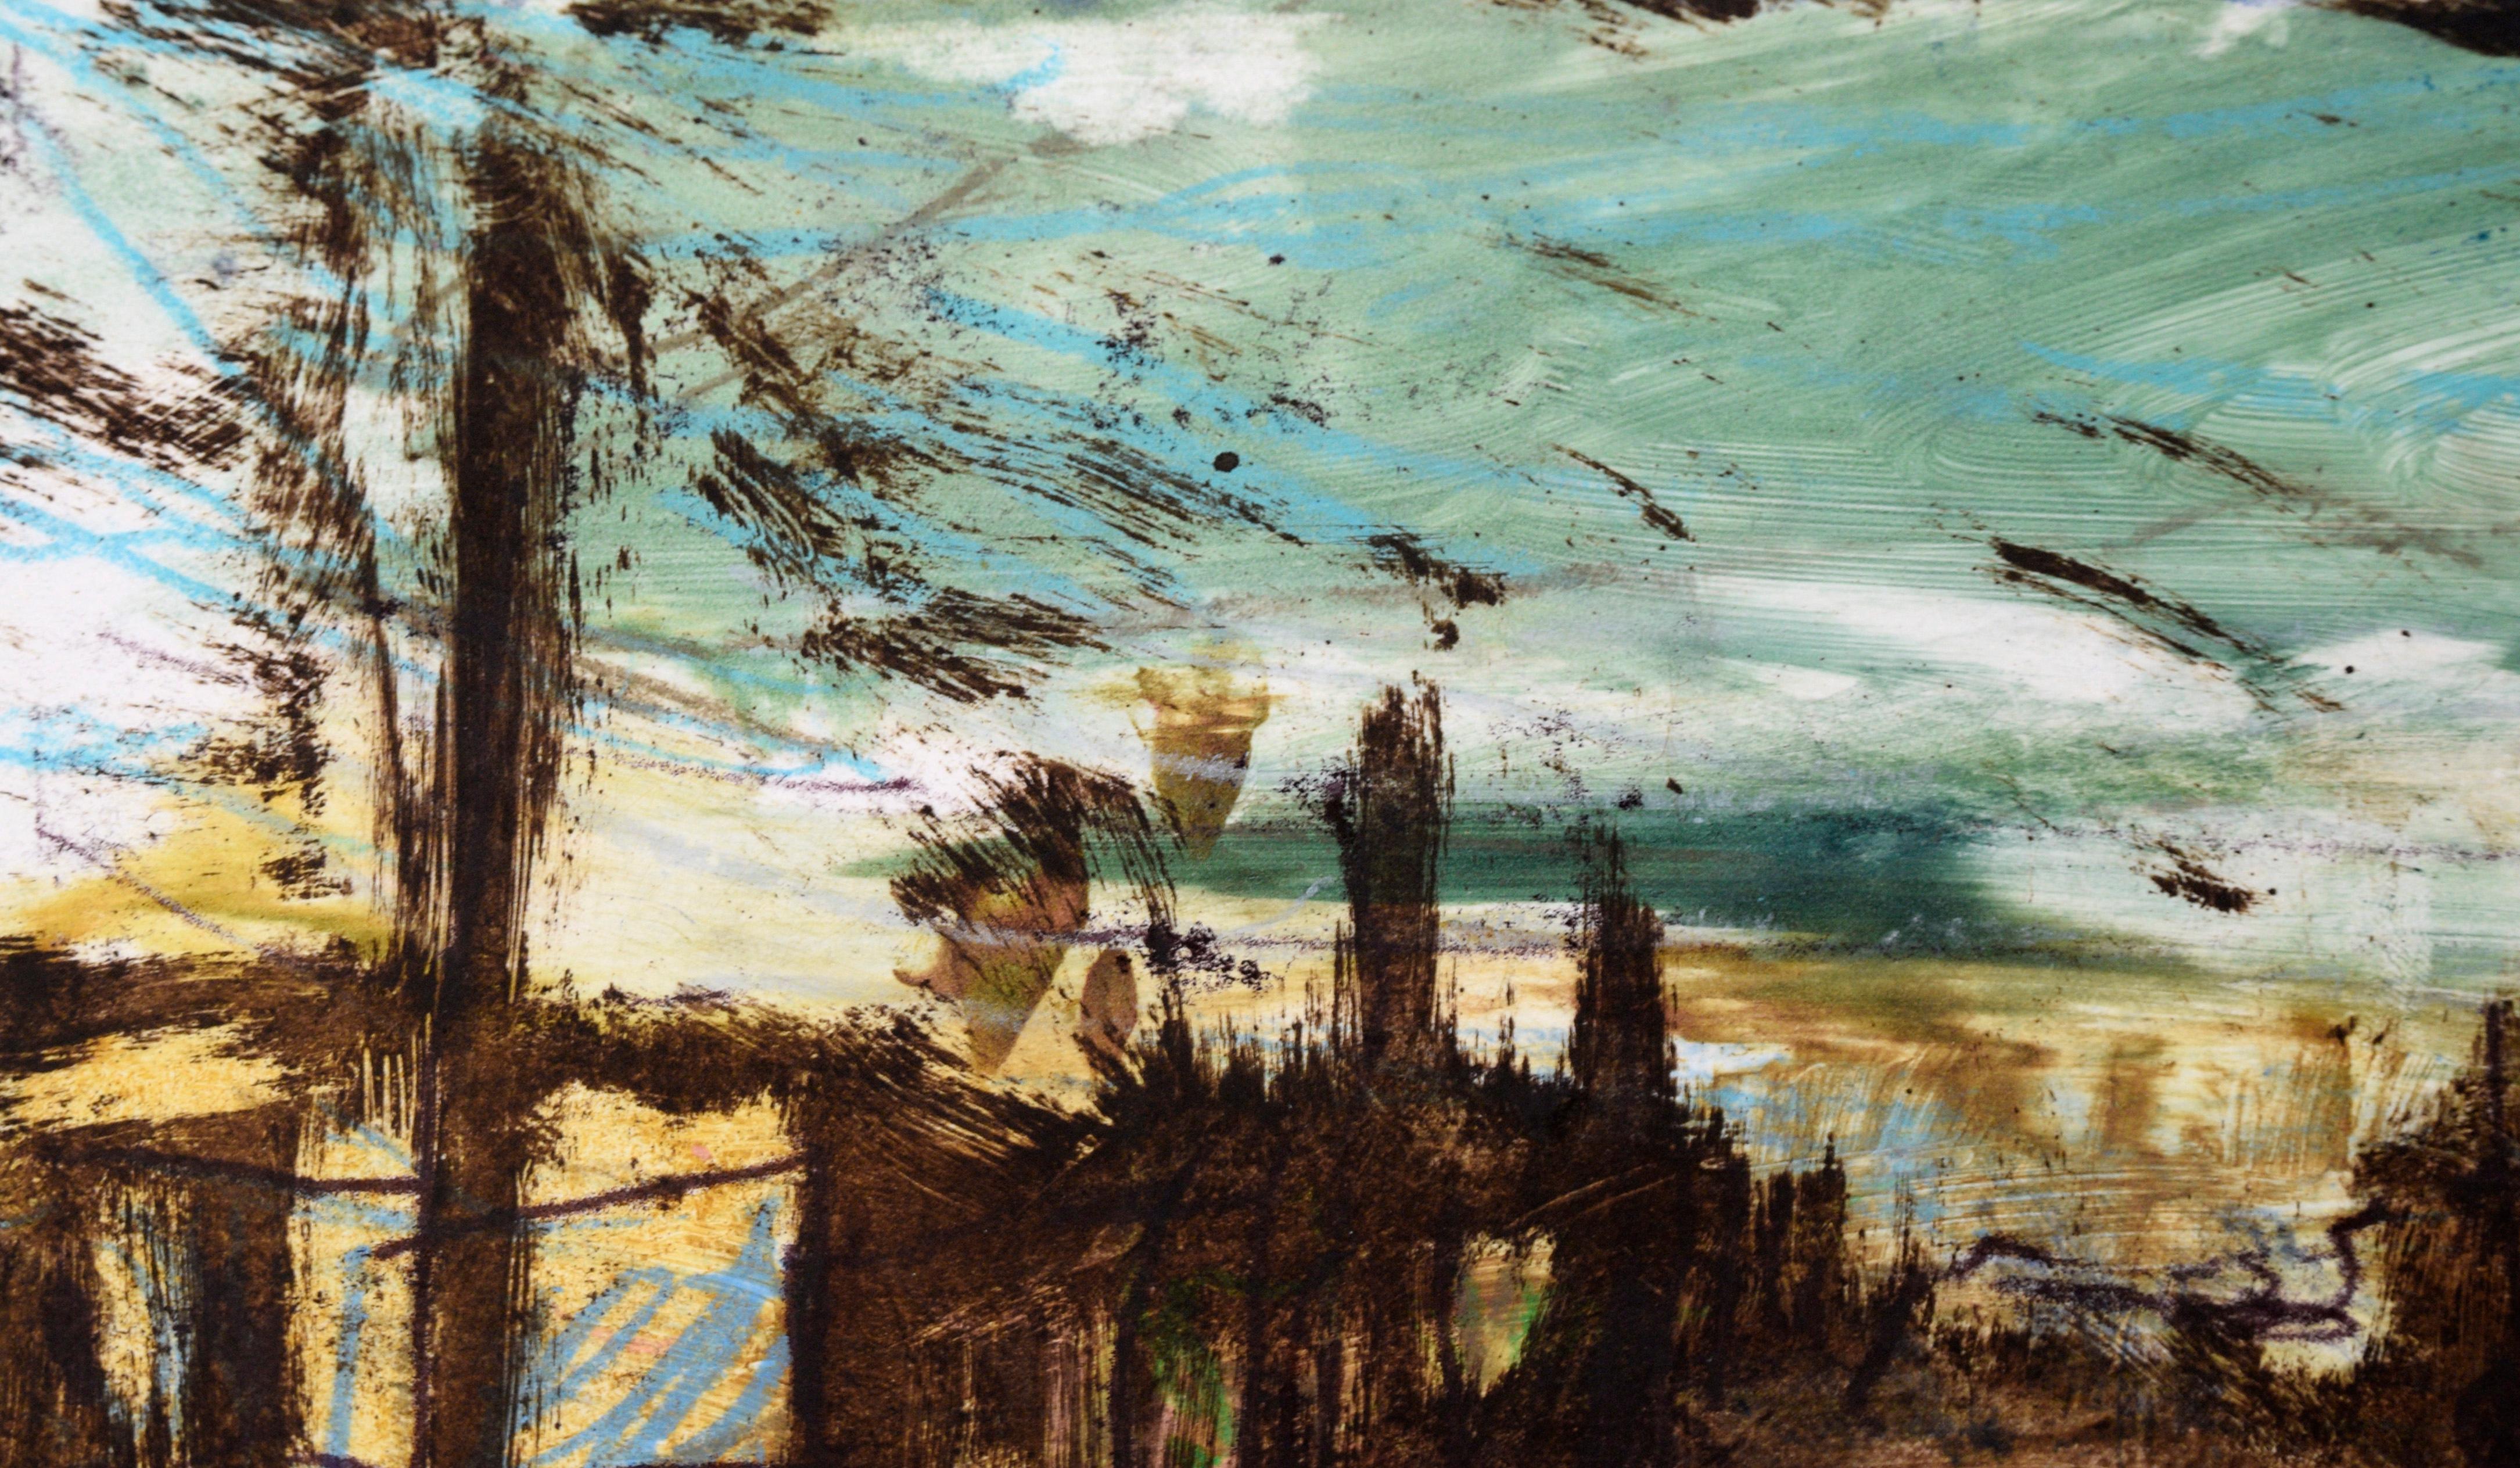 Abstrakte Stadtlandschaft – Transfer-Monotypie in Öl auf Papier (Abstrakter Expressionismus), Painting, von Heather Speck